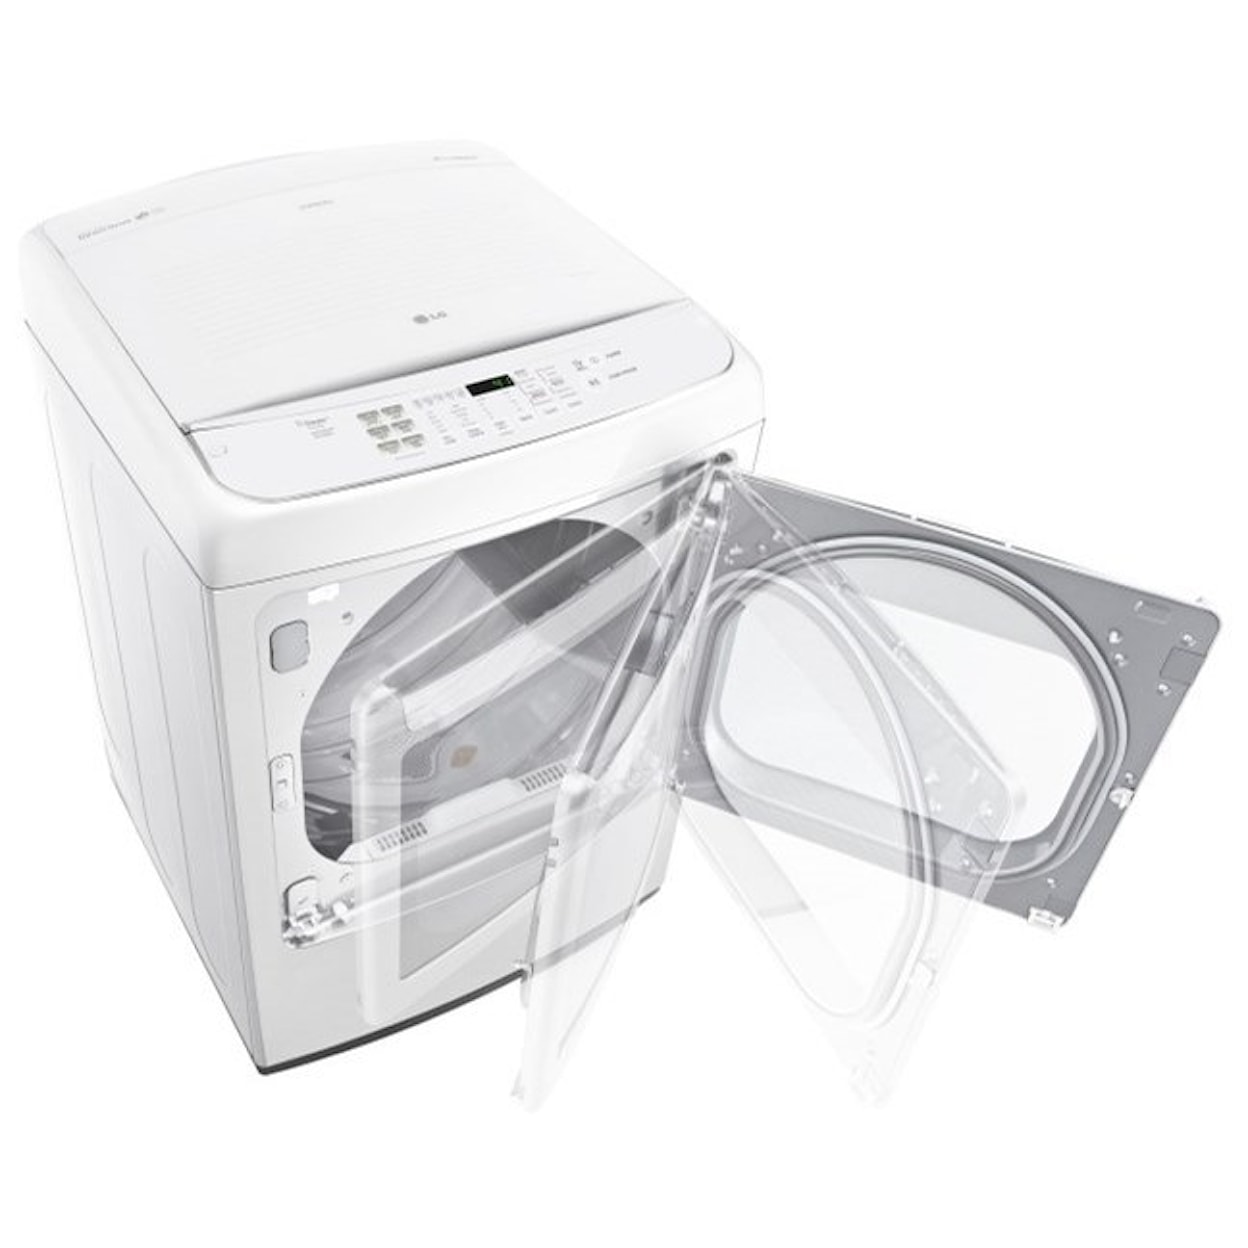 LG Appliances Dryers 7.3 Cu. Ft. Front Control Gas Dryer